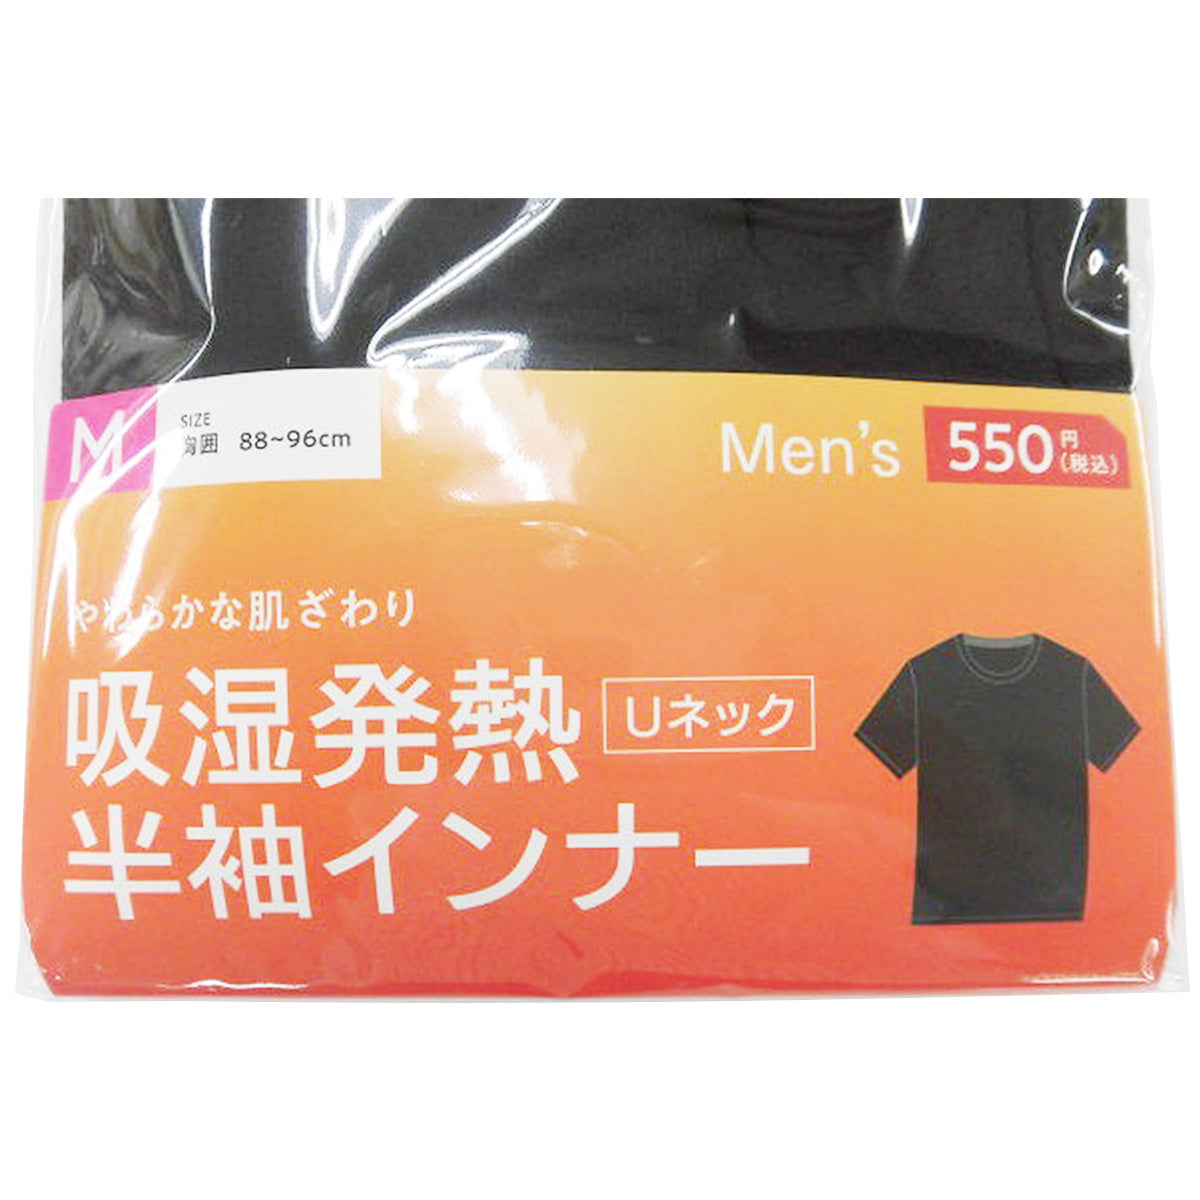 【OUTLET】Tシャツ 吸湿 下着 半袖シャツ 紳士 メンズ用インナー レーヨン M 304323